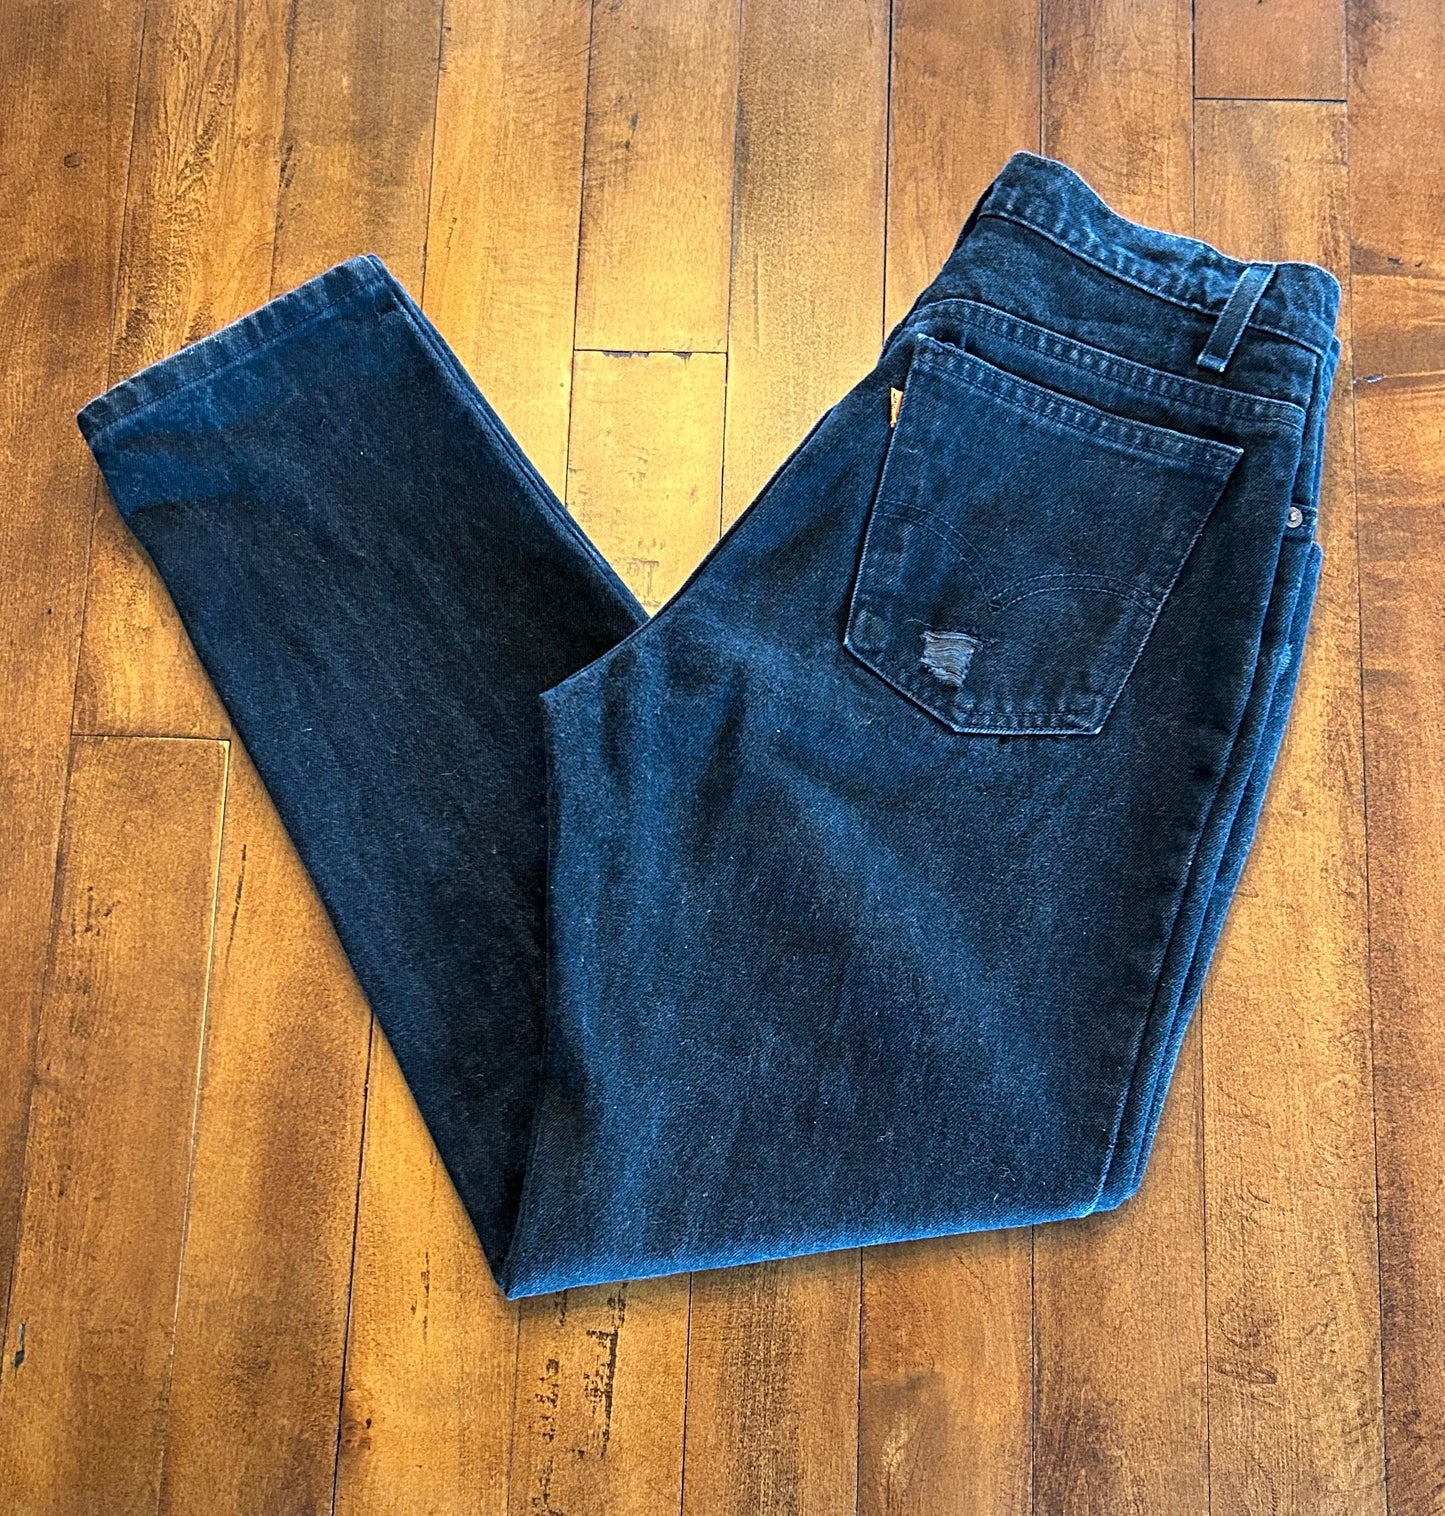 Vintage Distressed Levi Women’s Jeans Size 31x30